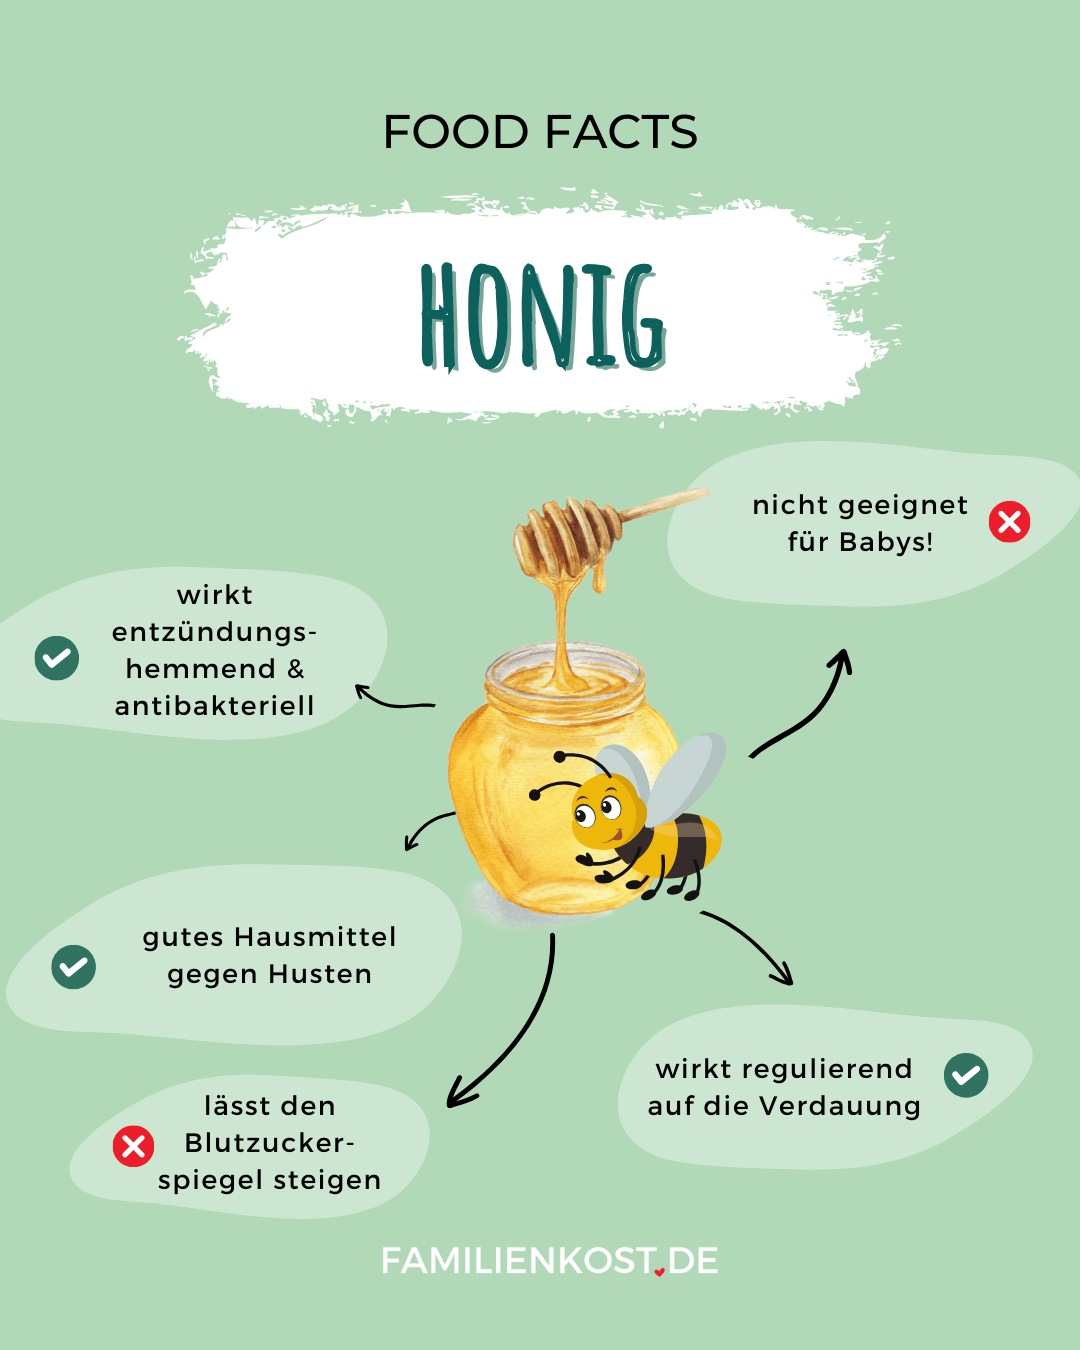 Honig gesund